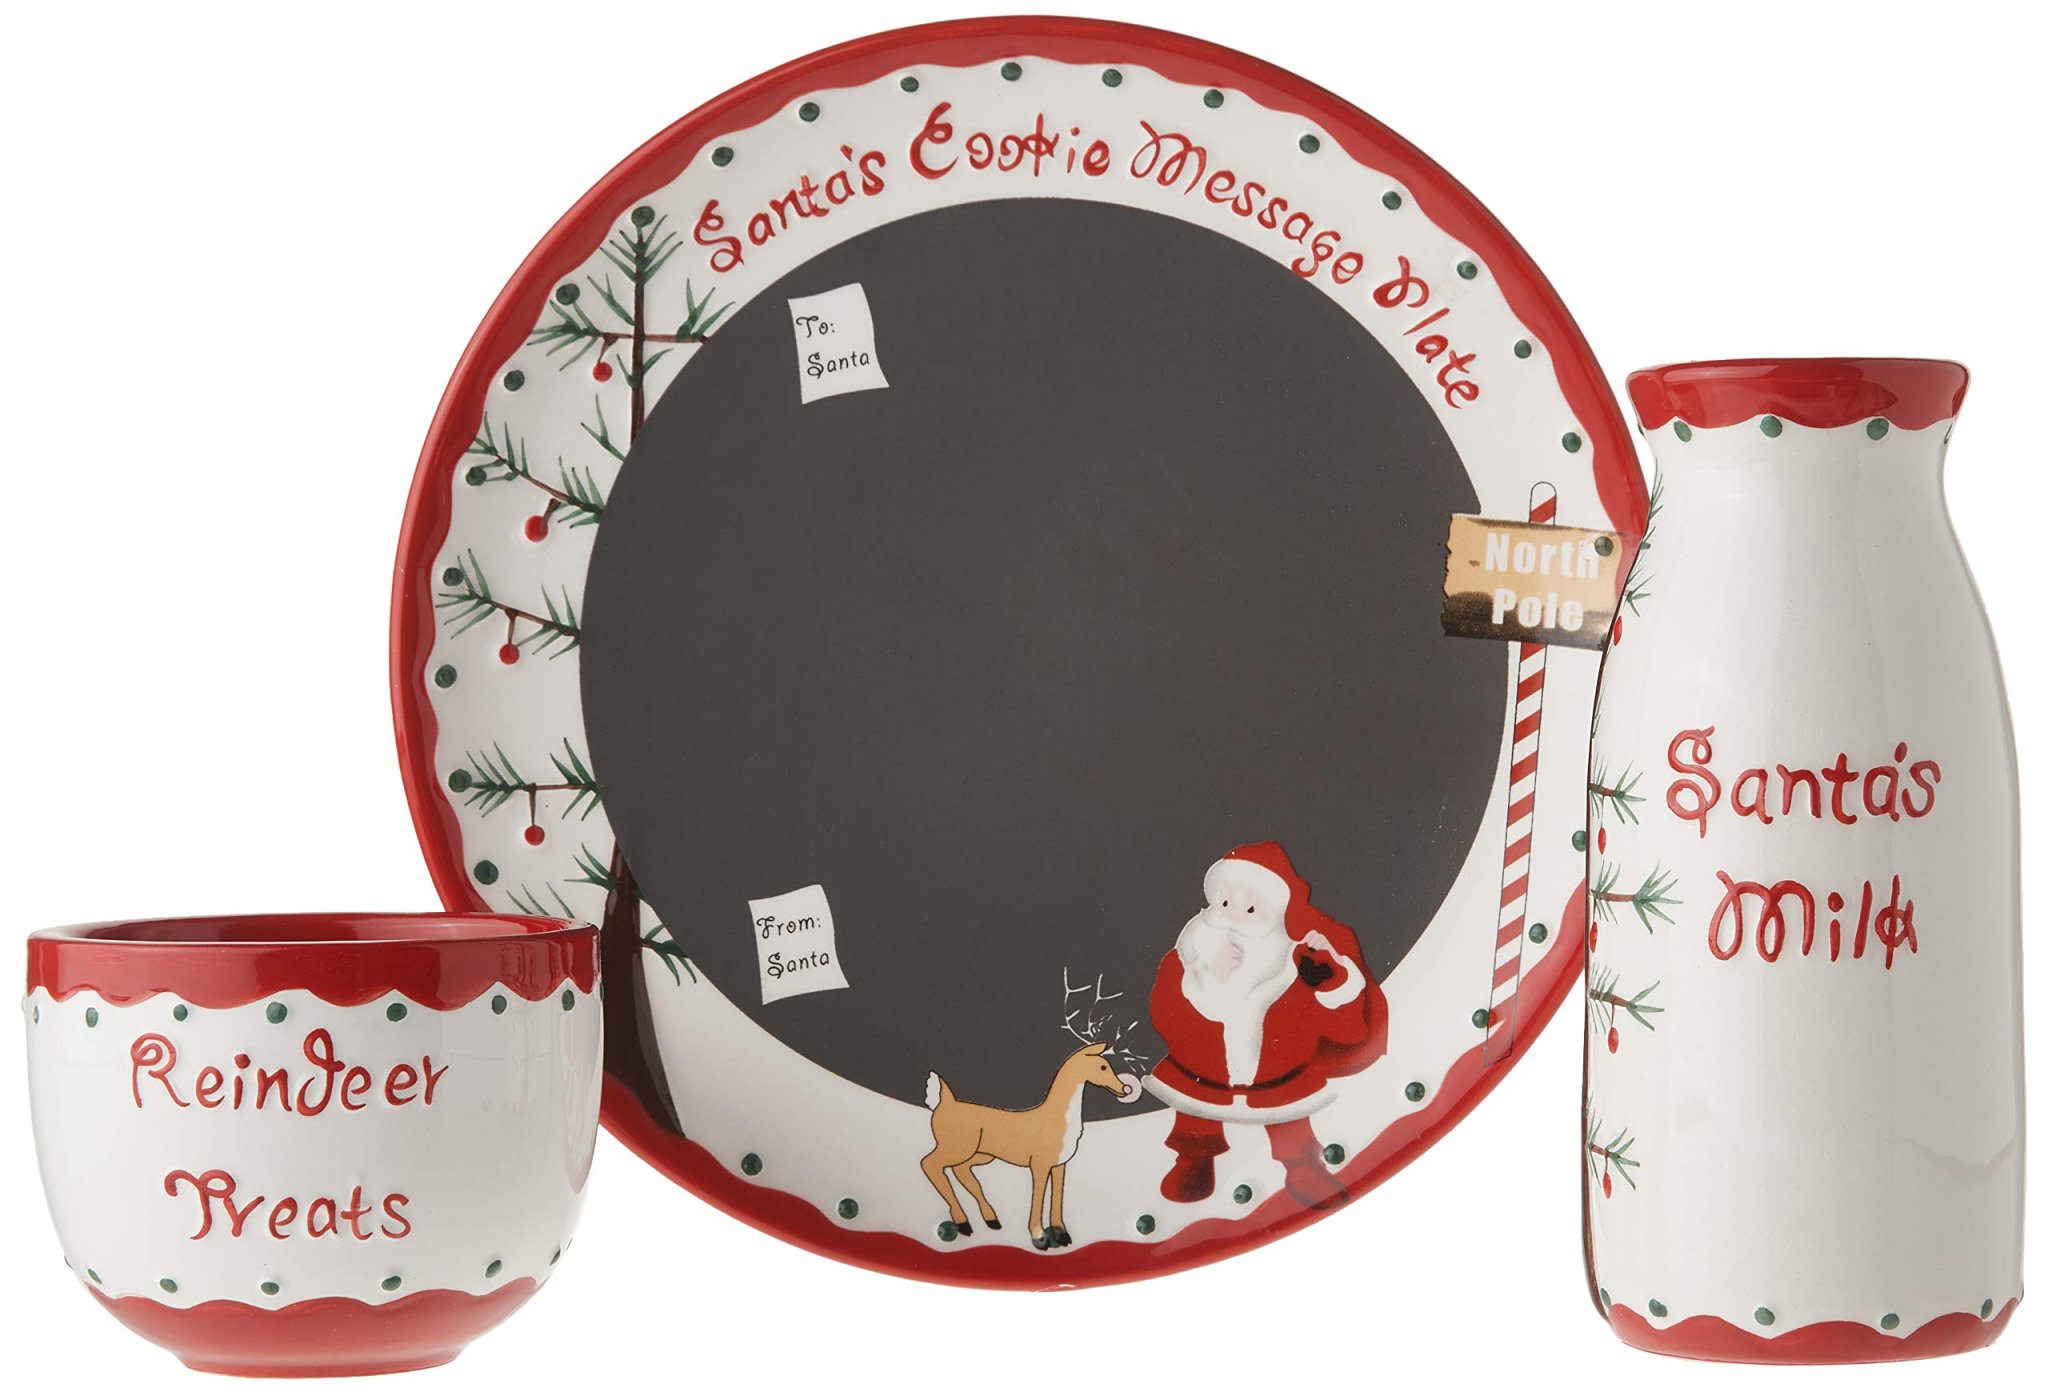 Santa cookie plate, milk jar, and reindeer treat bowl